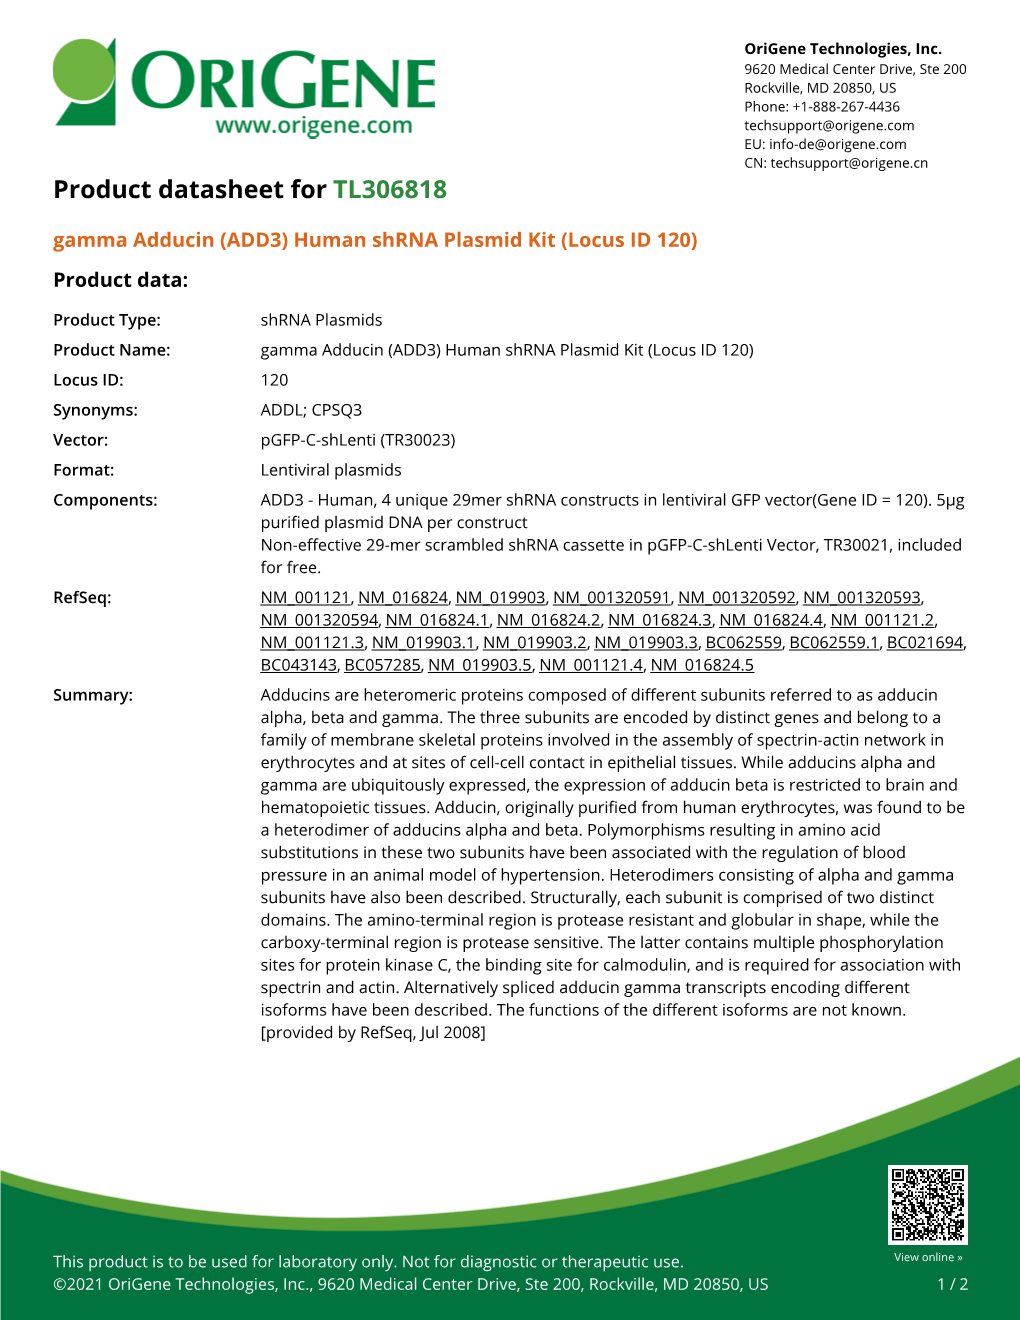 ADD3 Human Shrna Plasmid Kit (Locus ID 120) – TL306818 | Origene